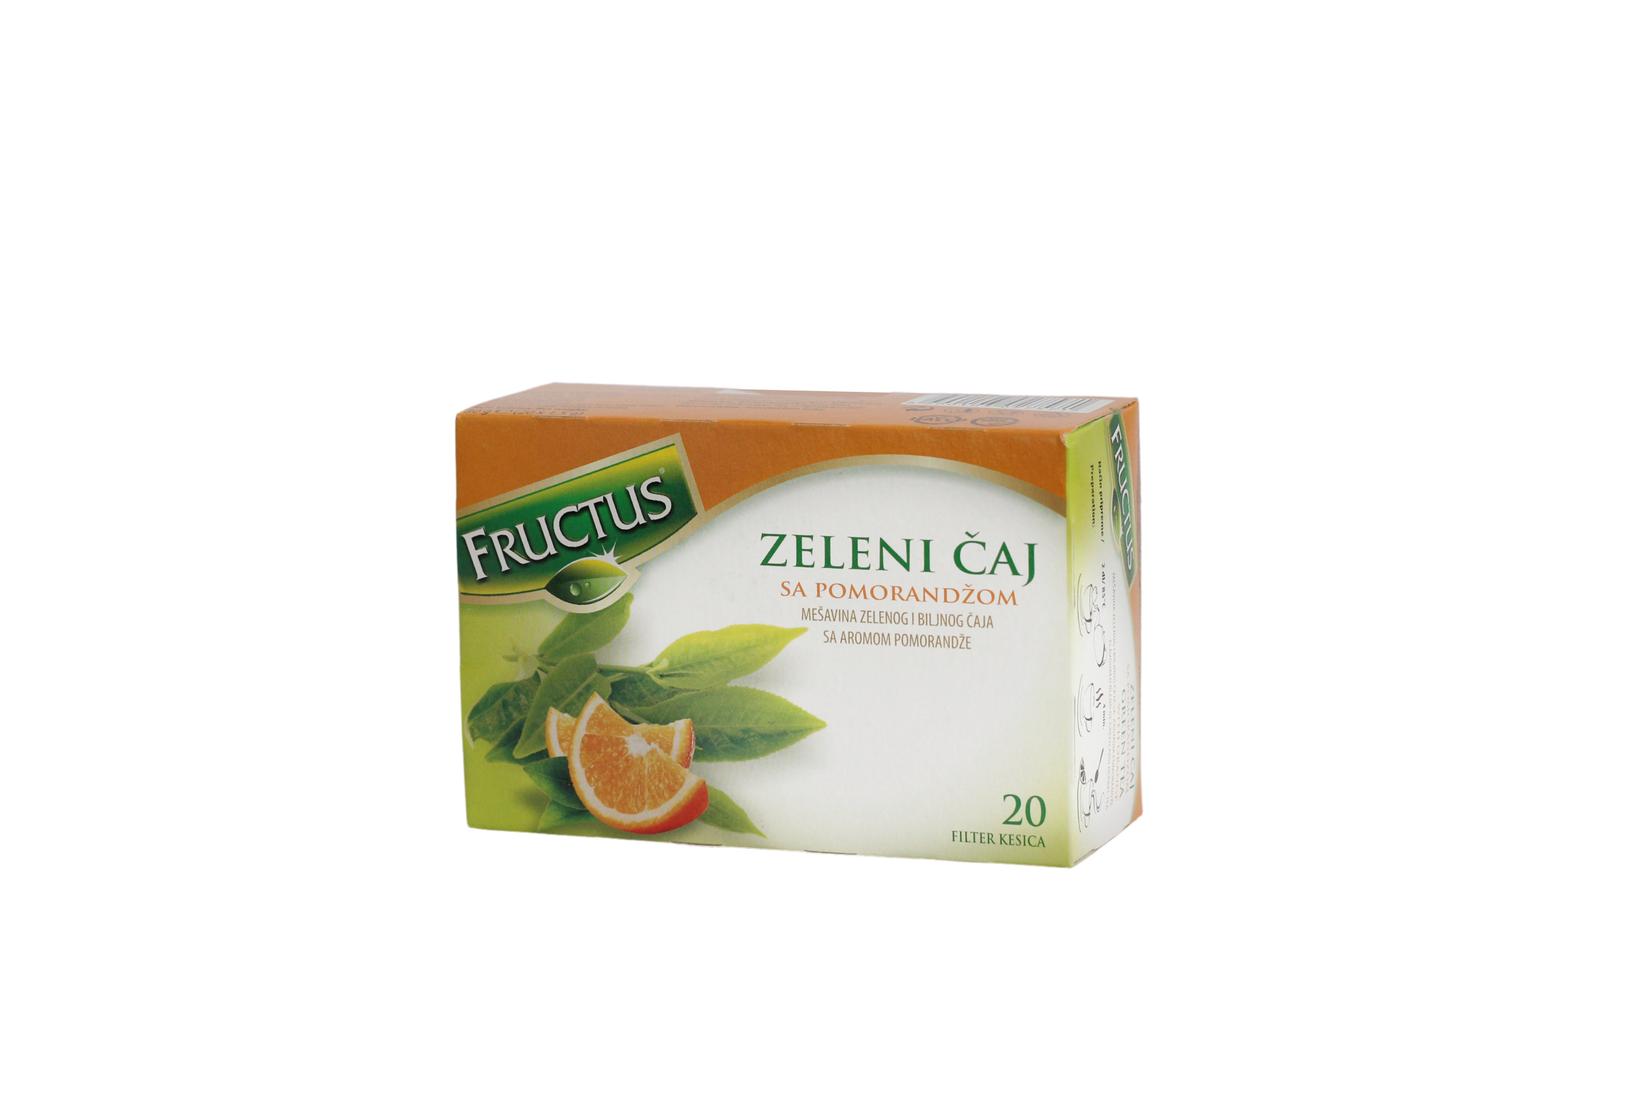 Selected image for FRUCTUS Zeleni čaj sa narandžom 30g, 20x1.5g